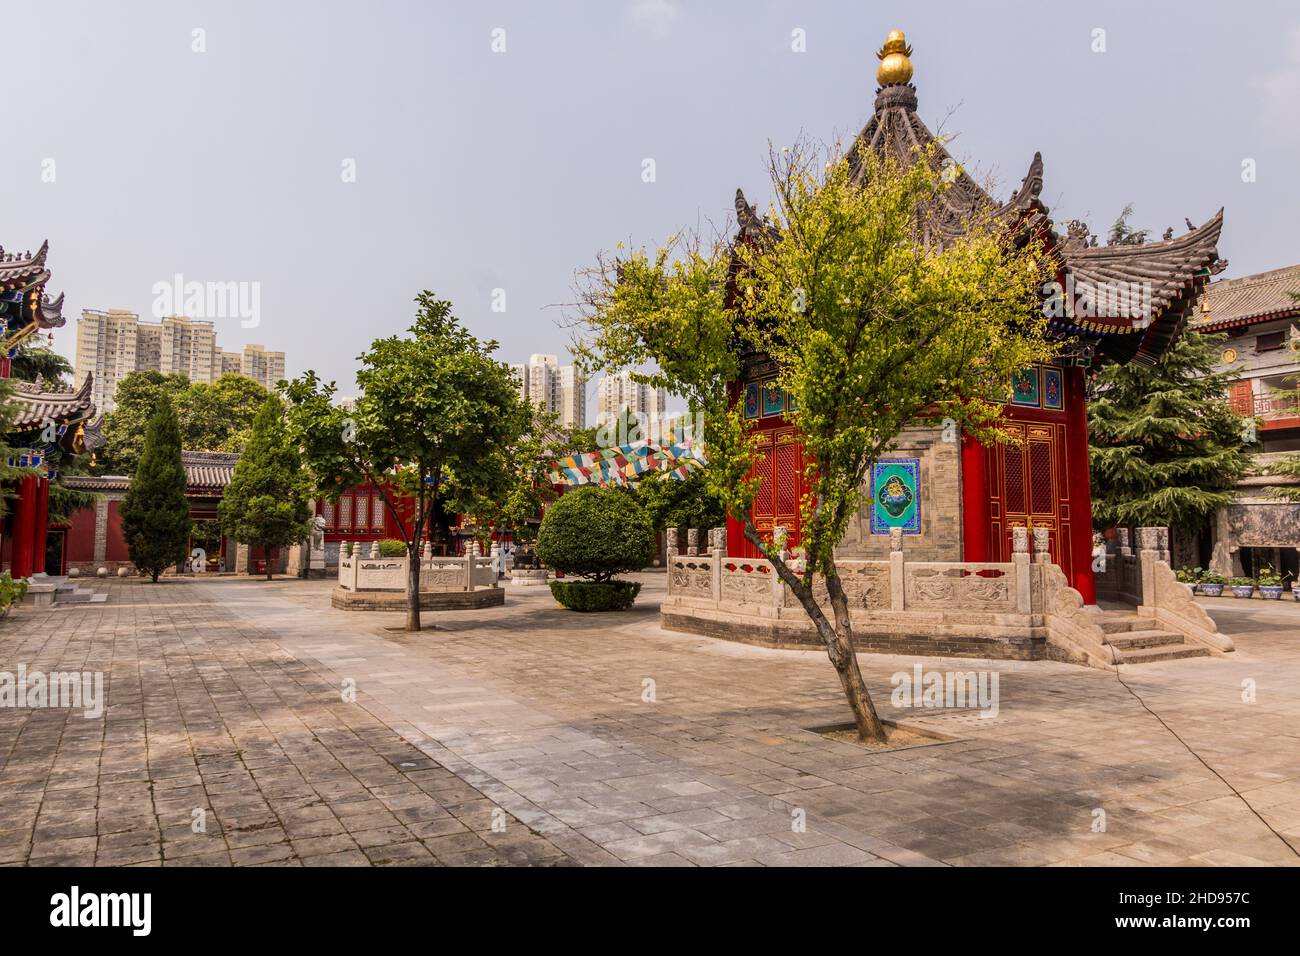 Guangren Lama Temple in Xi'an, China Stock Photo